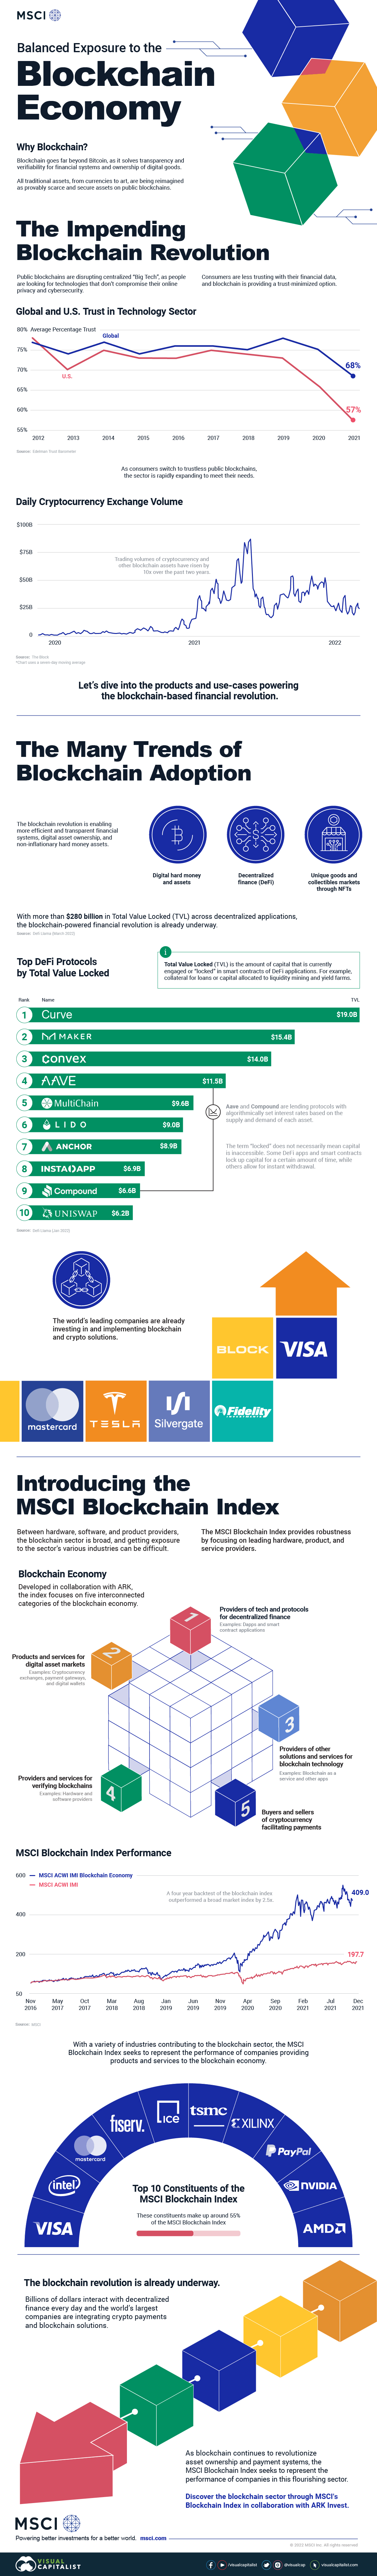 blockchain economy infographic